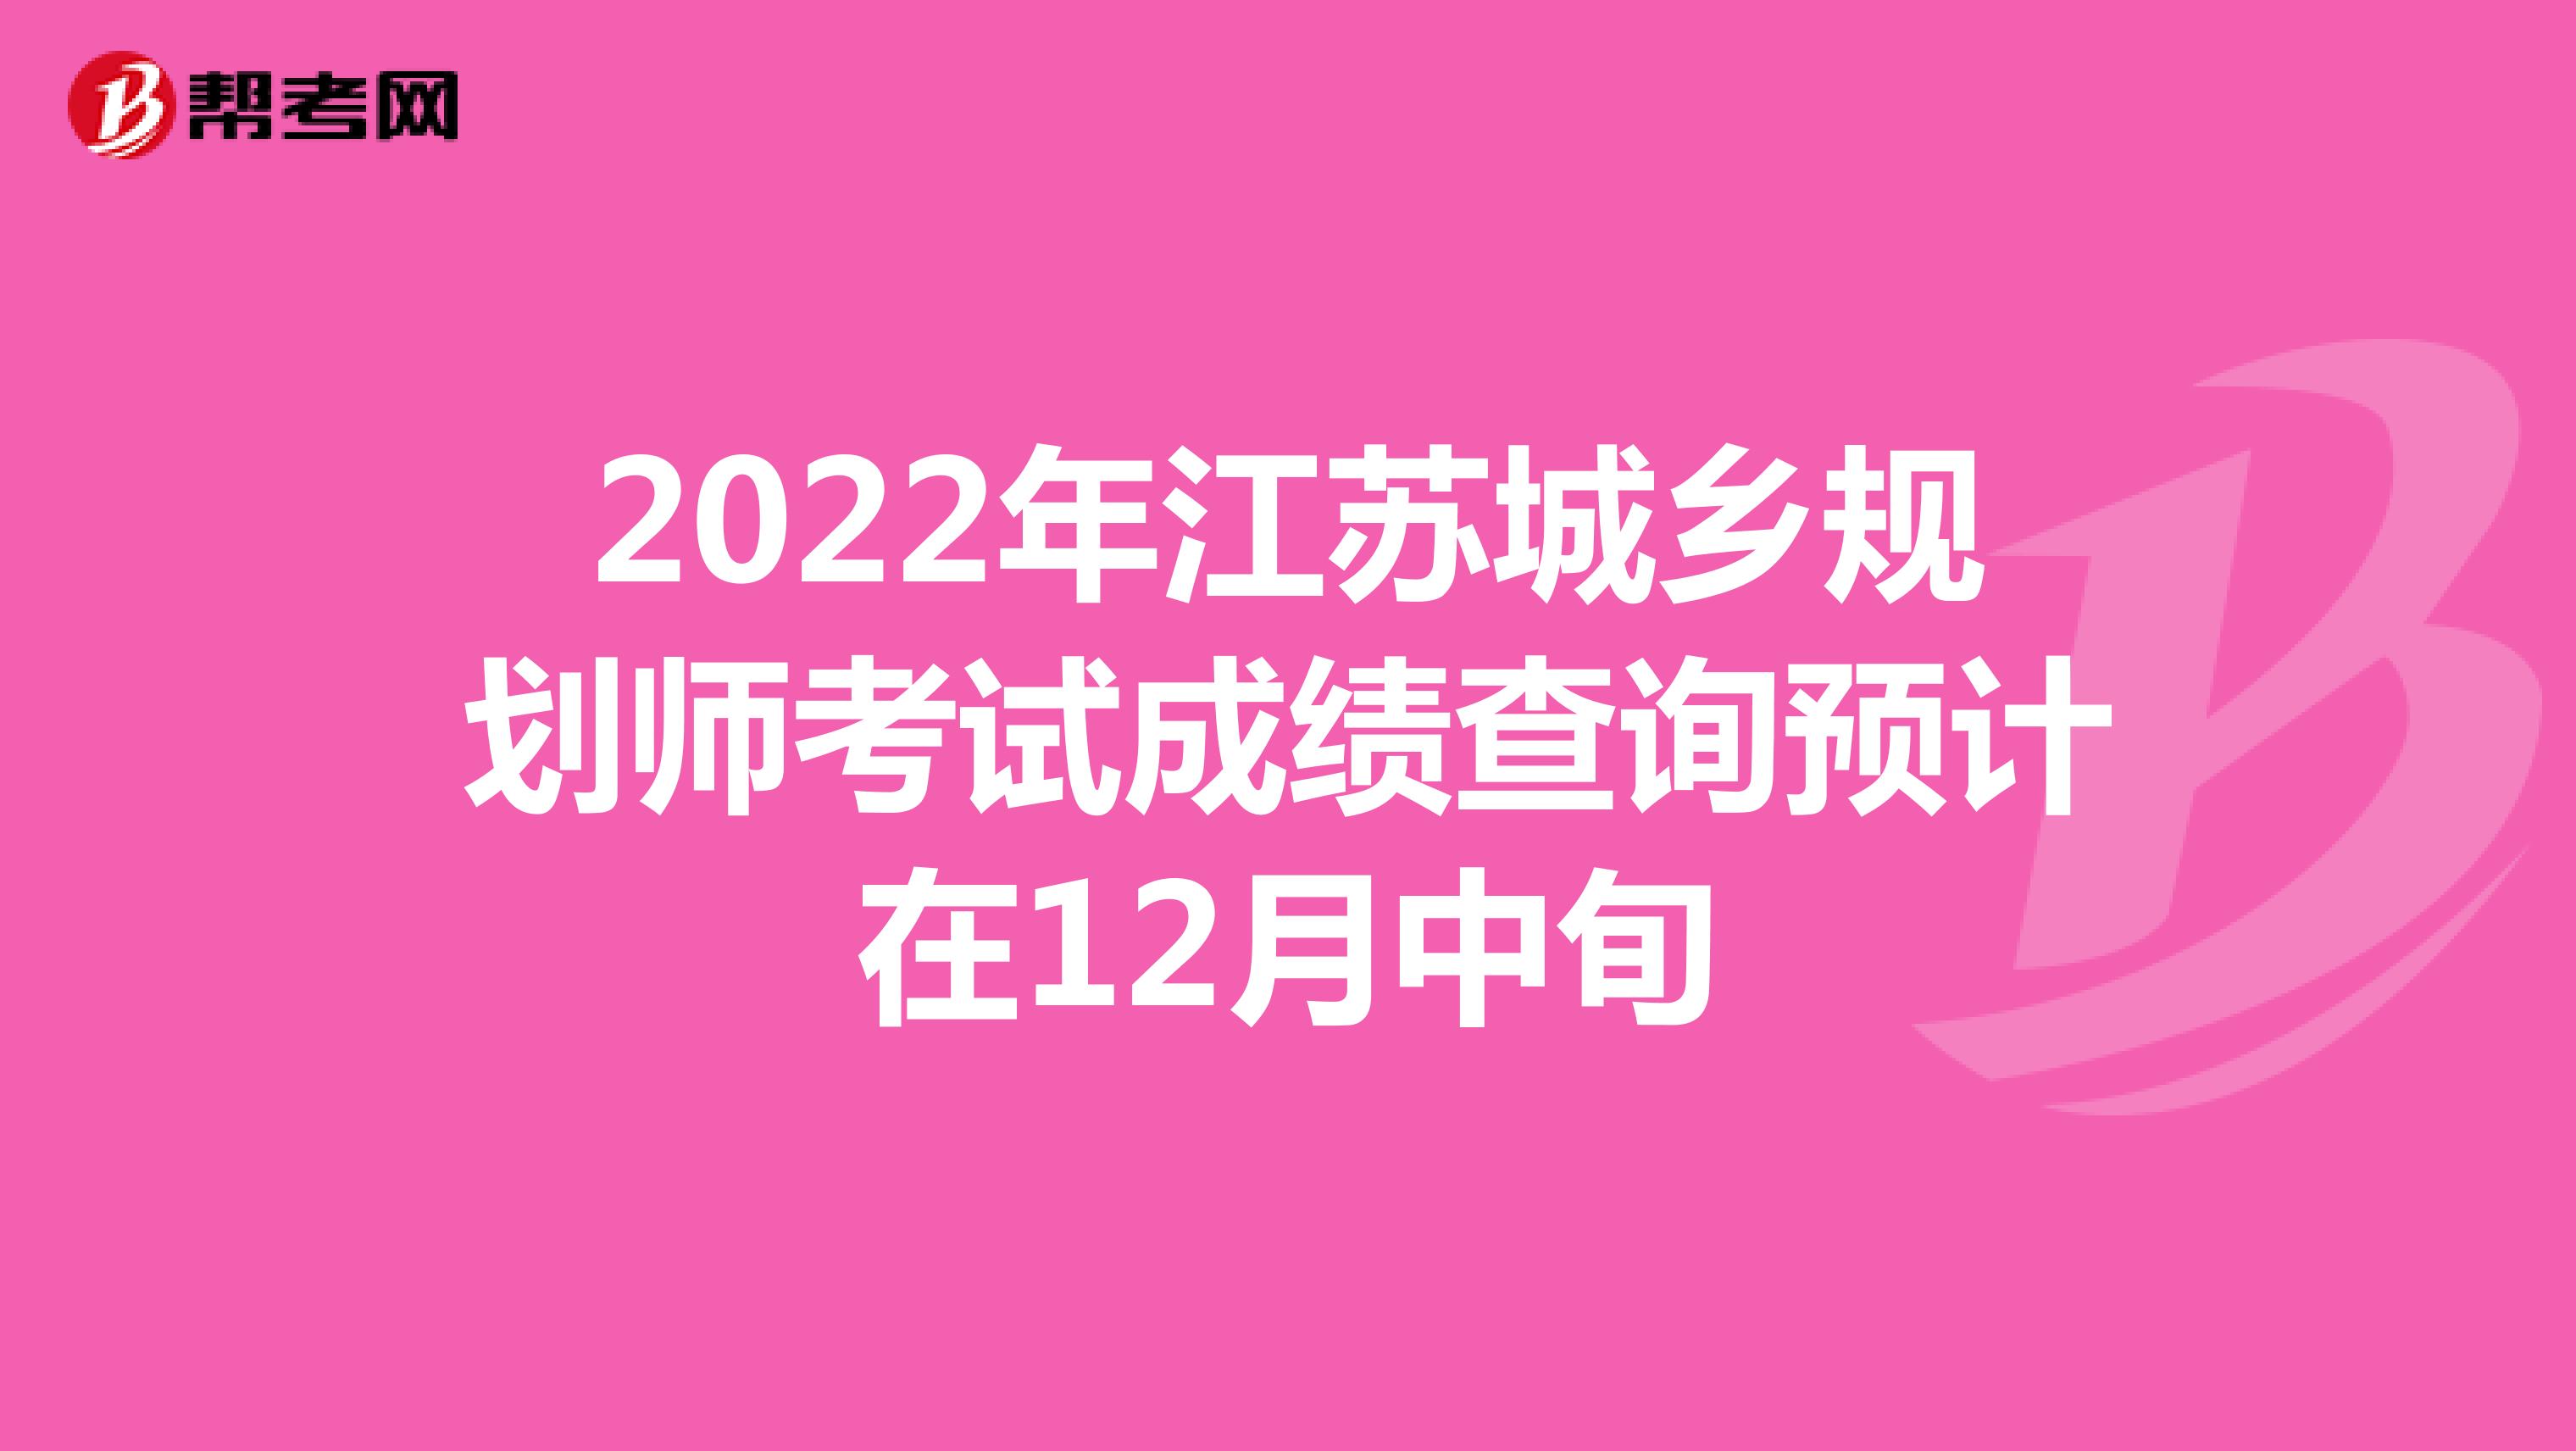 2022年江苏城乡规划师考试成绩查询预计在12月中旬